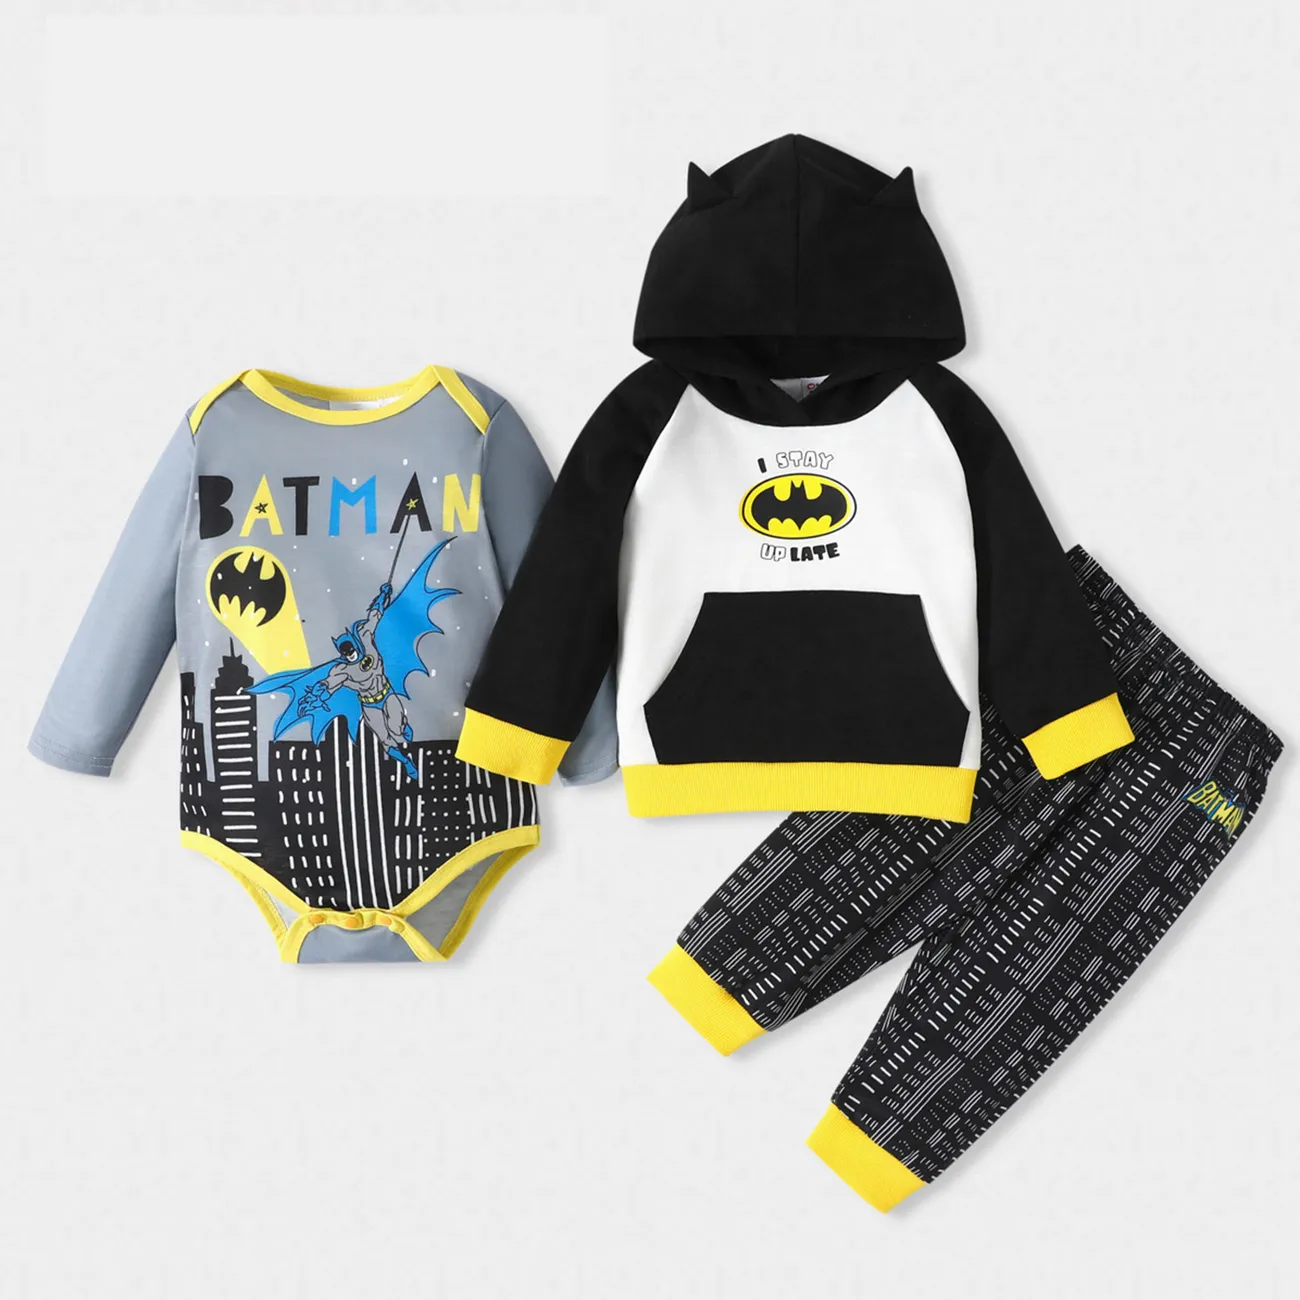 Batman Baby Boy Classic Logo Hooded Sweatshirt and Bodysuit and Pants Black / Gray big image 1